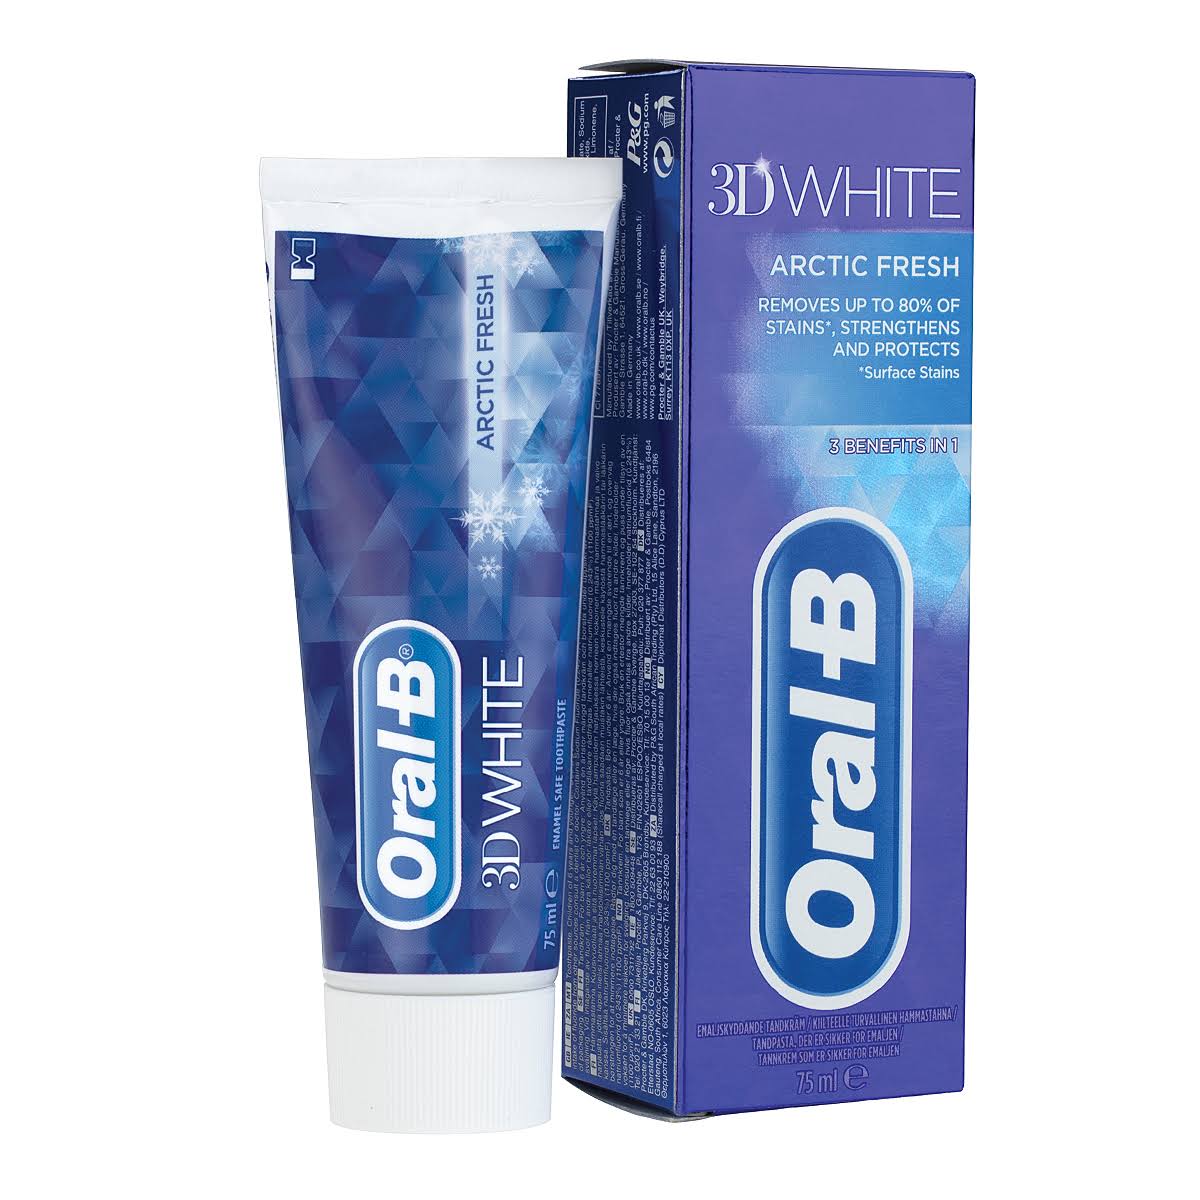 Oral B 3D White Arctic Fresh Toothpaste 75 ml